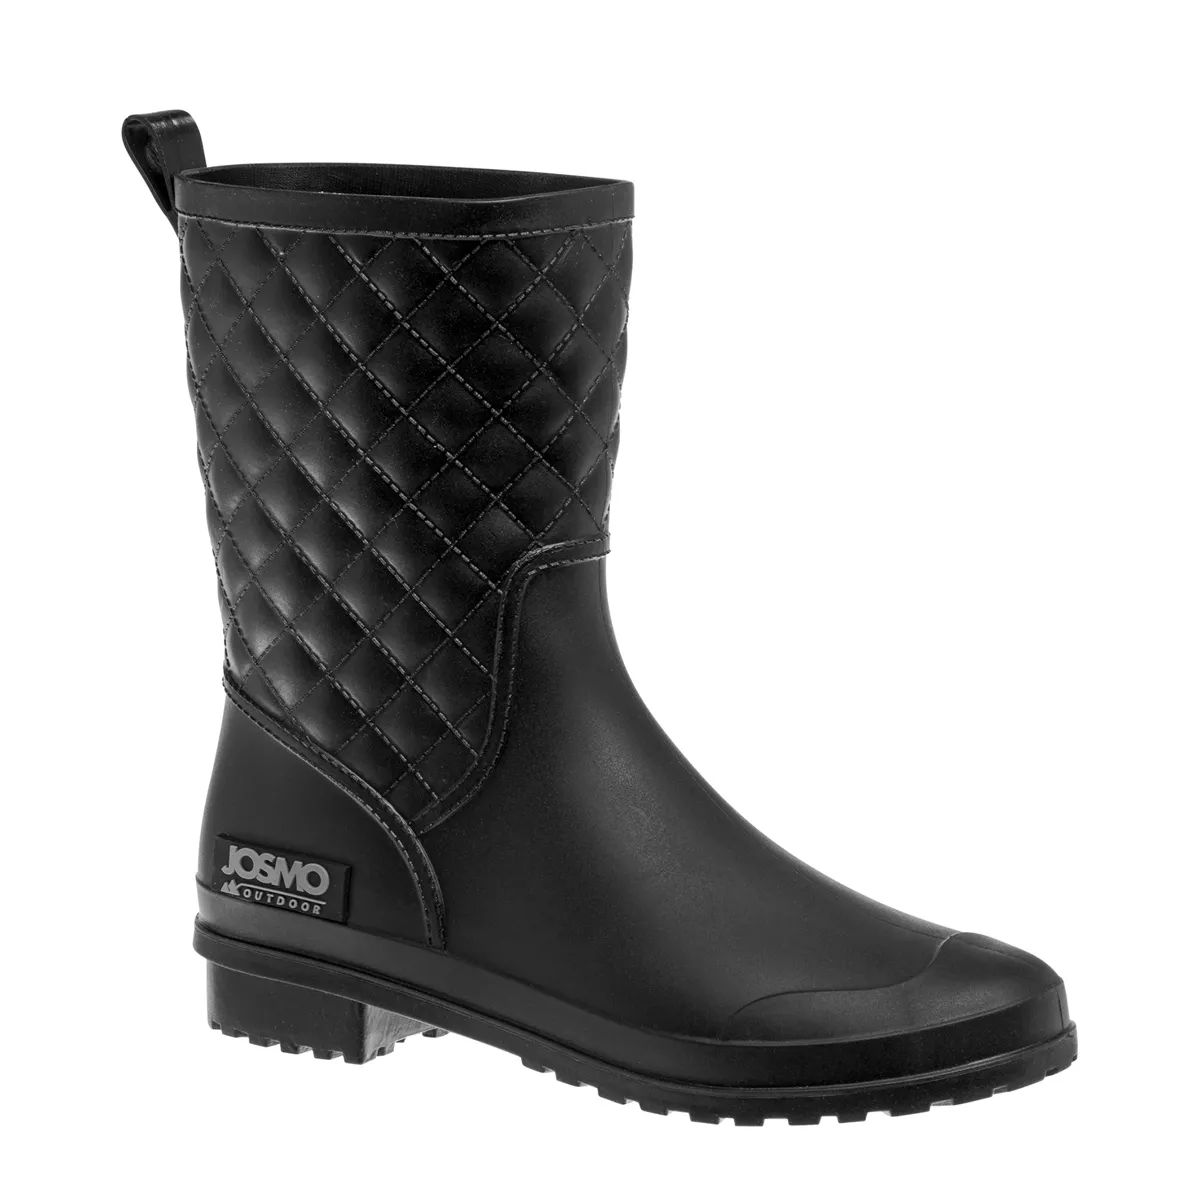 Josmo Waterproof Women Snow Boots | Target